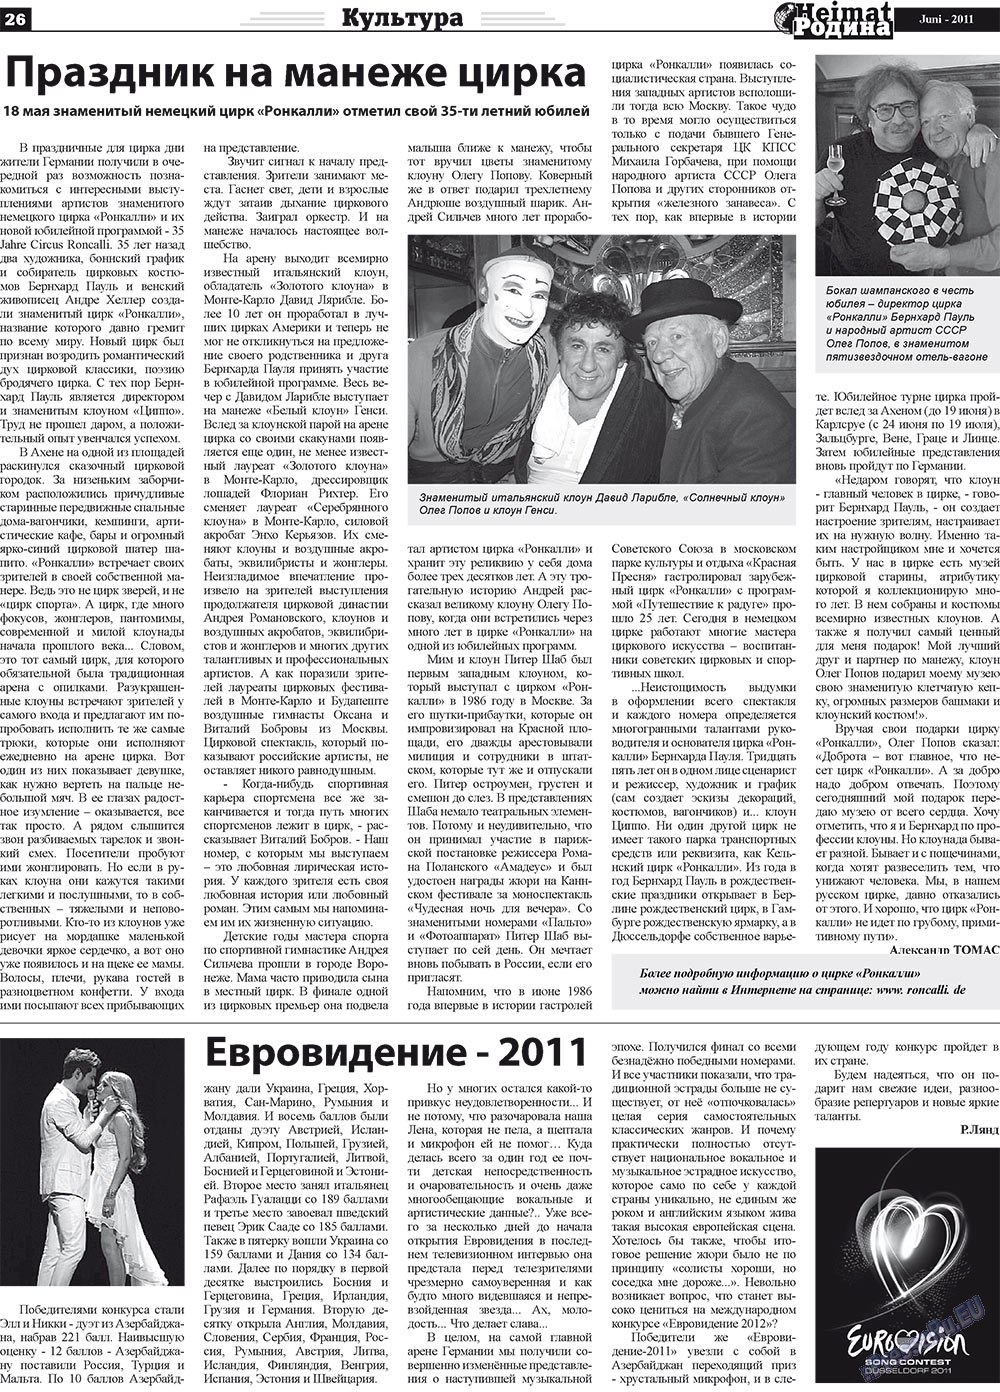 Heimat-Родина (газета). 2011 год, номер 6, стр. 26